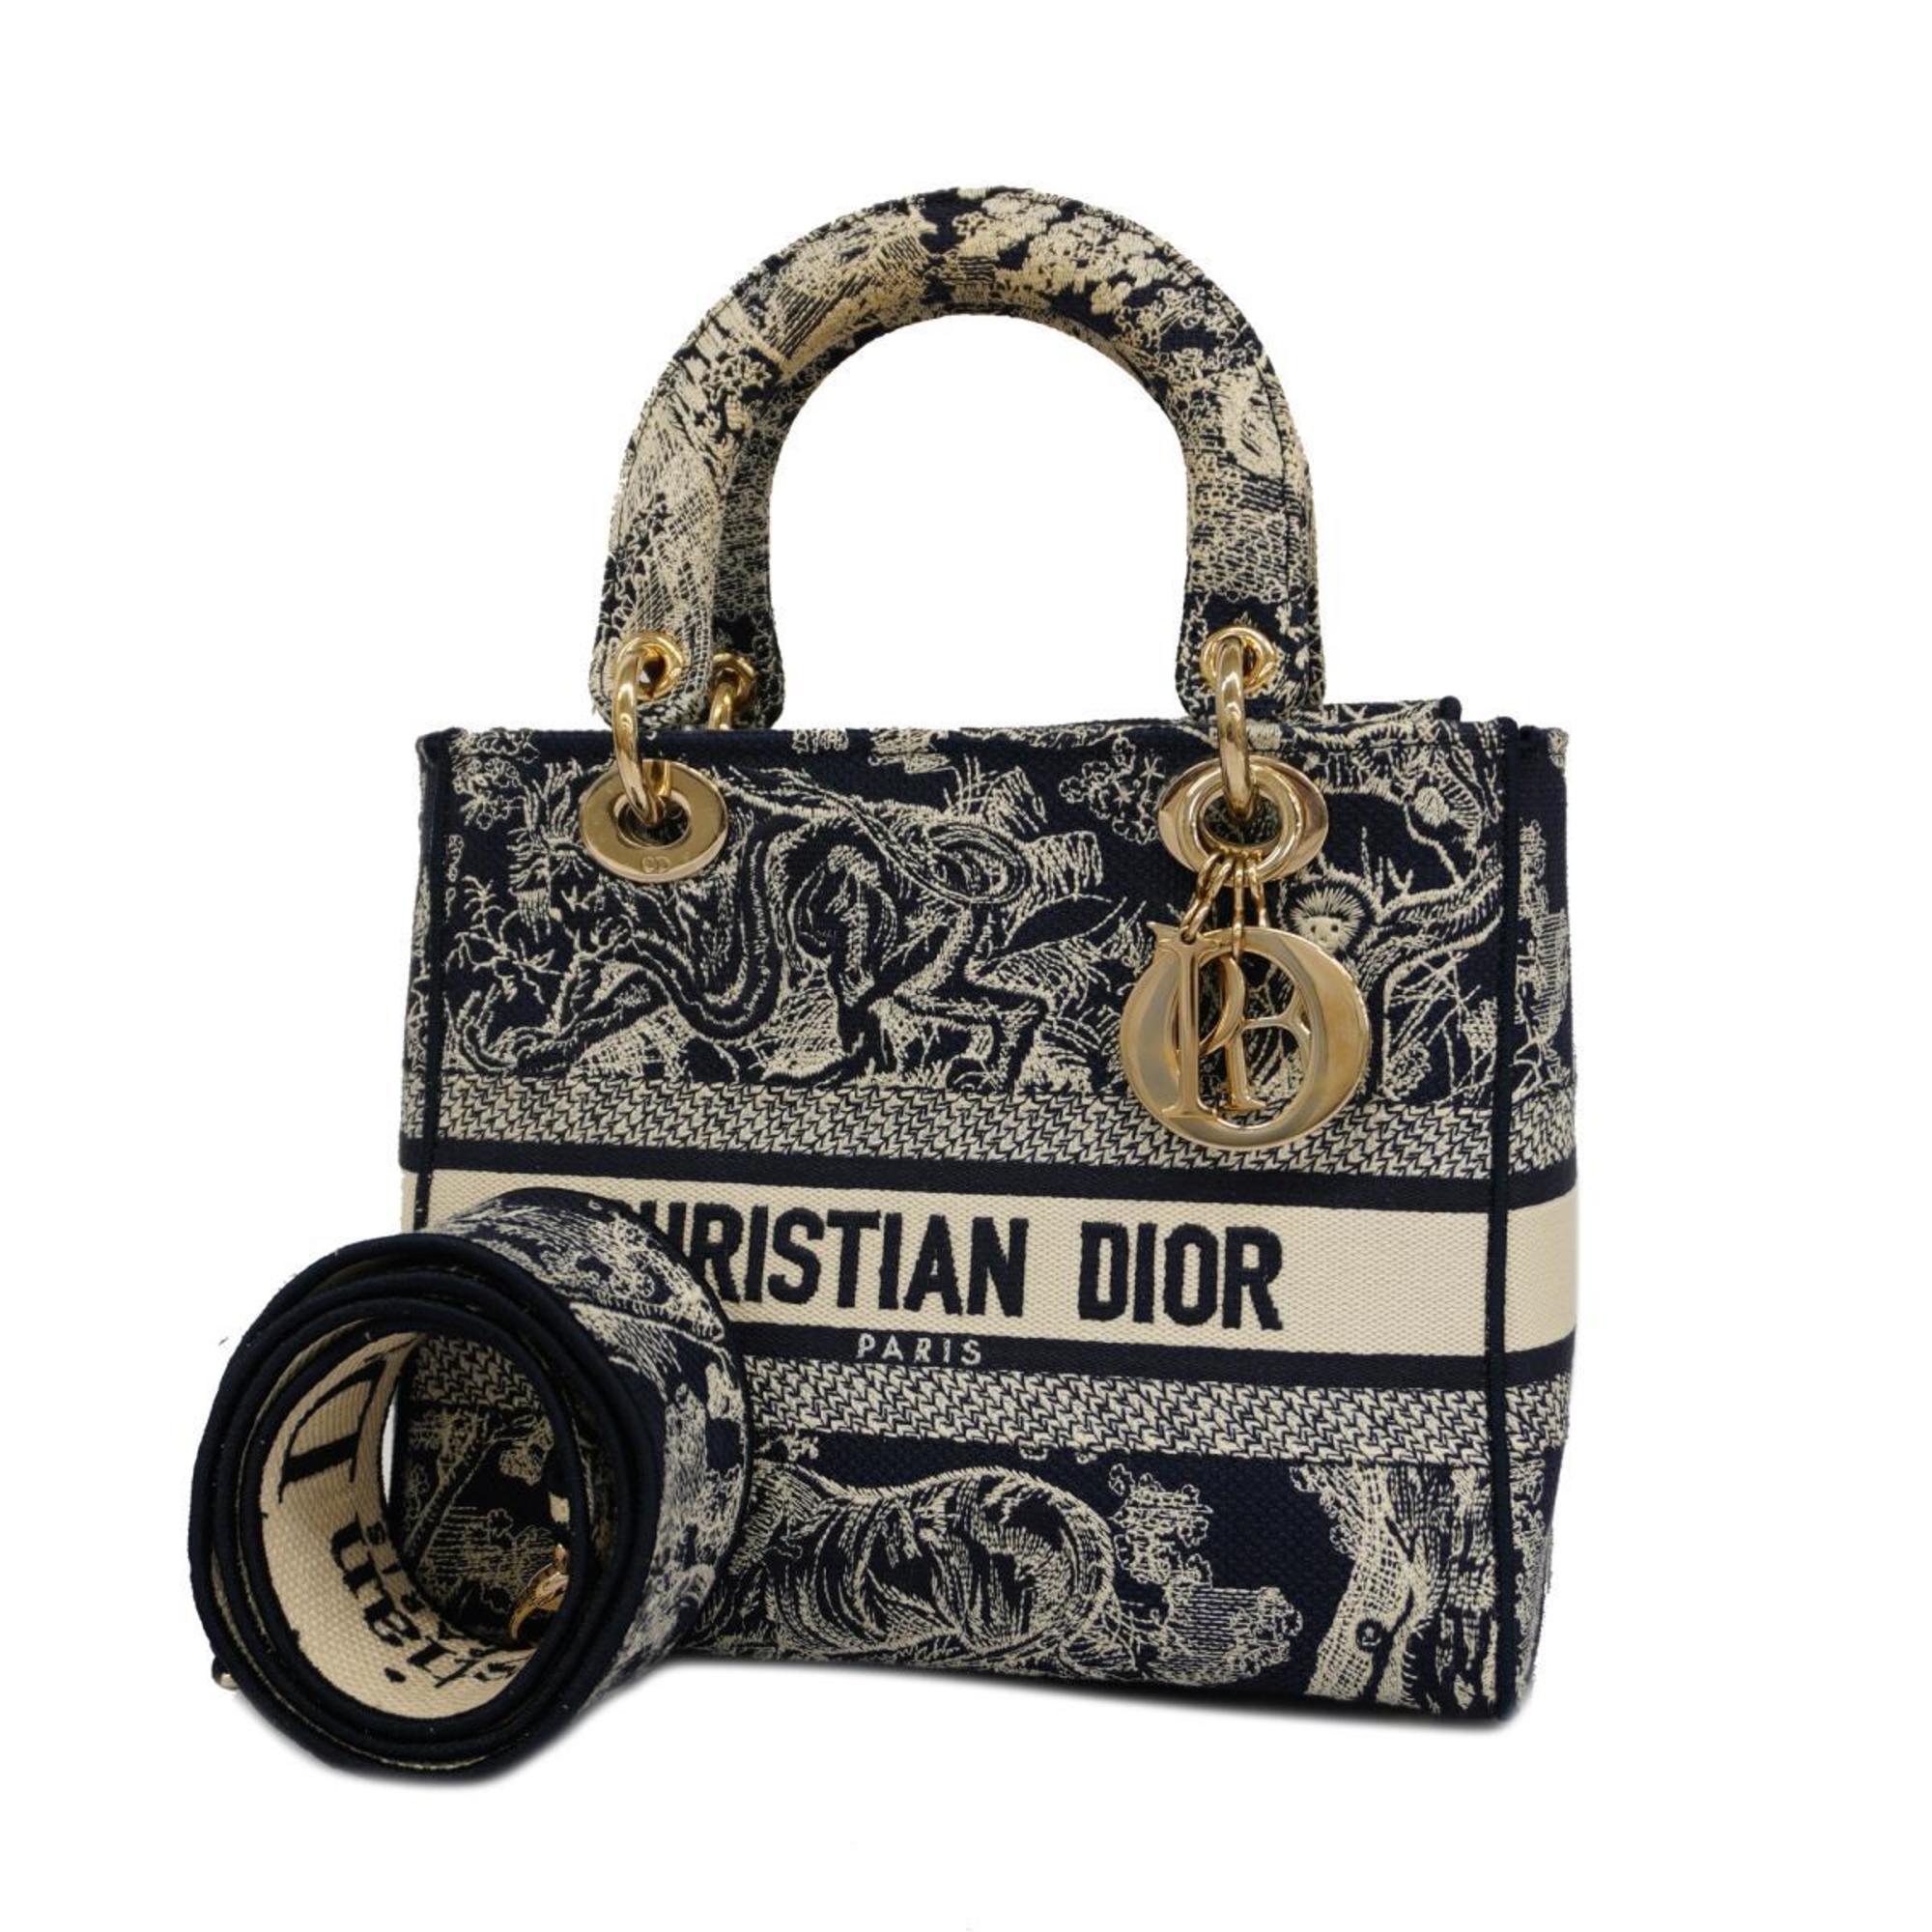 クリスチャン・ディオール(Christian Dior) クリスチャンディオール 